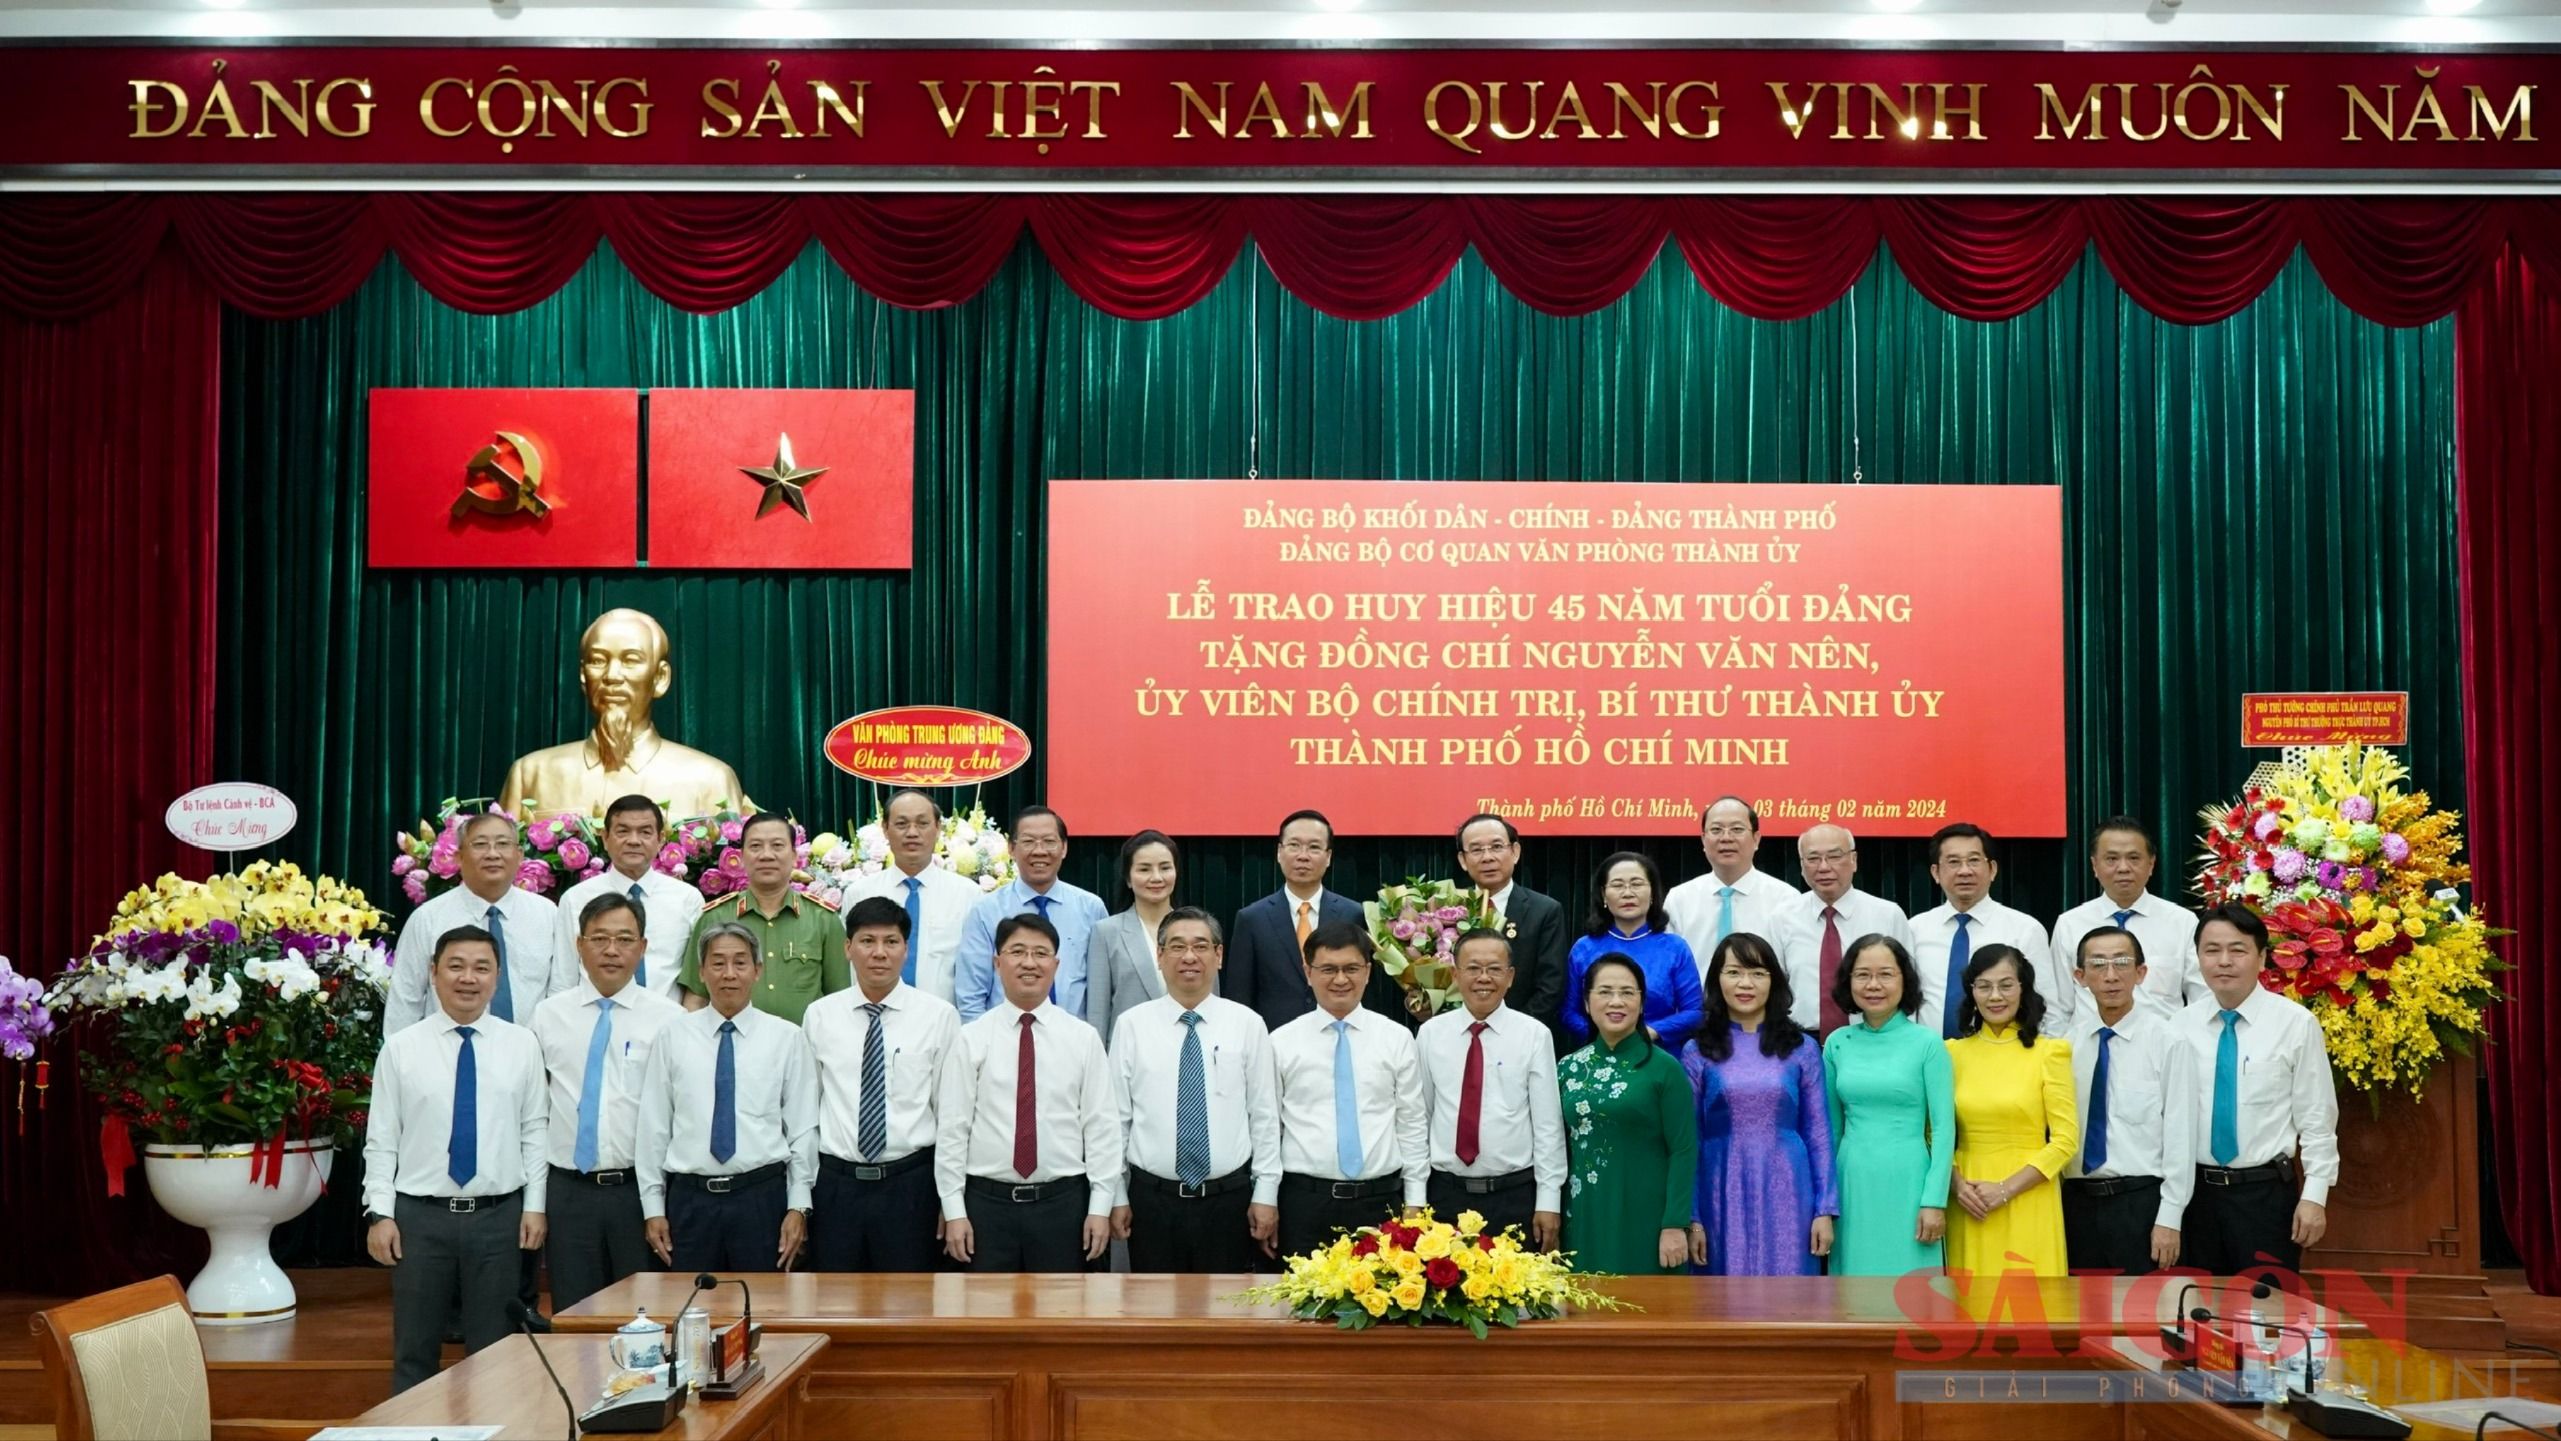 2-Chủ tịch nước Võ Văn Thưởng và các đồng chí trong Ban Thường vụ Thành ủy TP. Hồ Chí Minh chúc mừng Bí thư Nguyễn Văn Nên nhận Huy hiệu 45 năm tuổi Đảng (Ảnh: Hoàng Hùng).